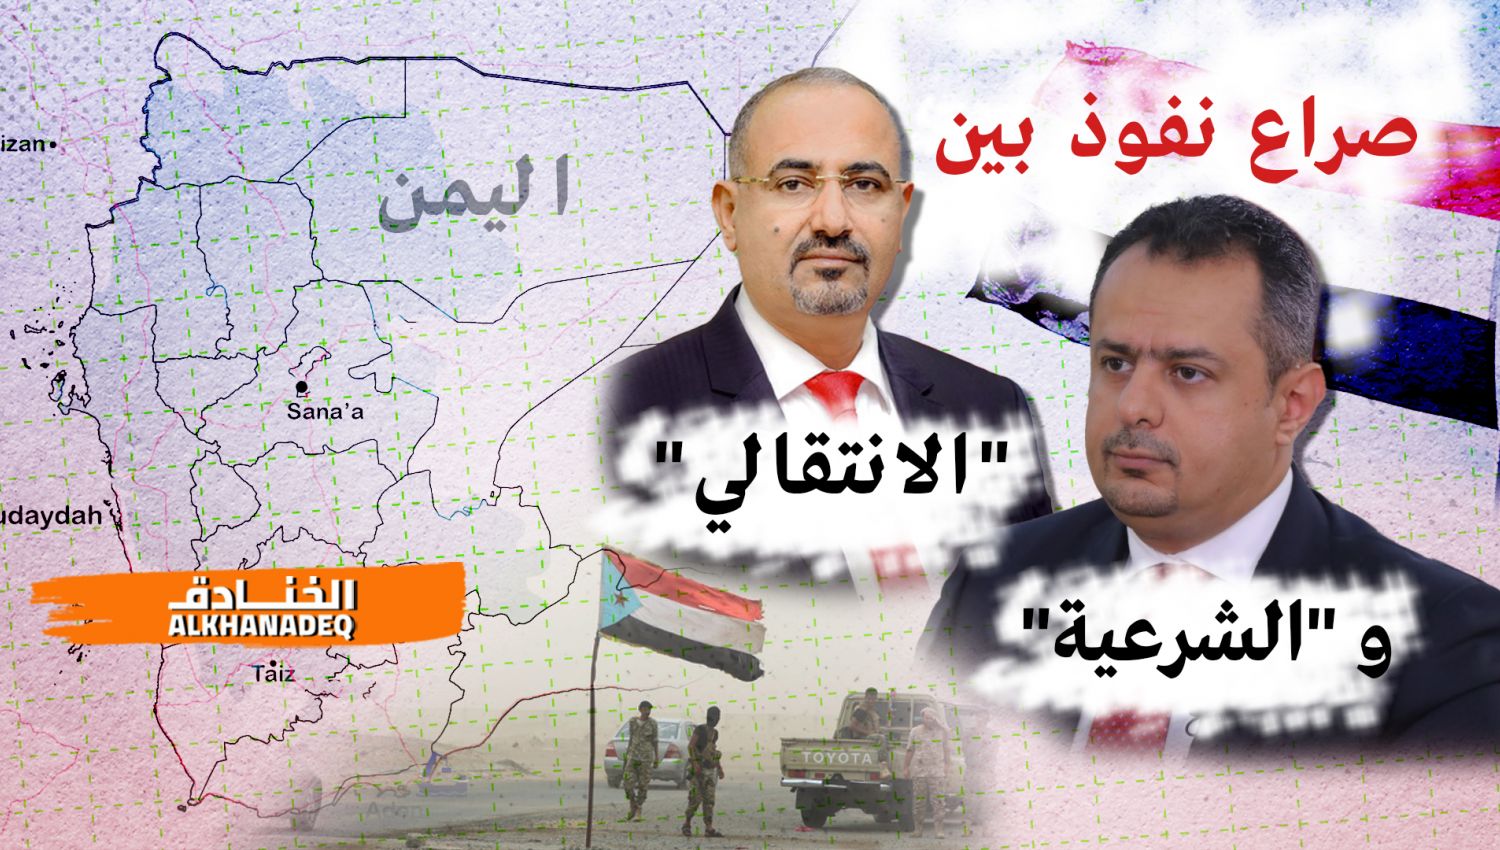 تقدم الجيش واللجان اليمنية يزيد الانشقاق بين ميليشيات الإمارات والسعودية